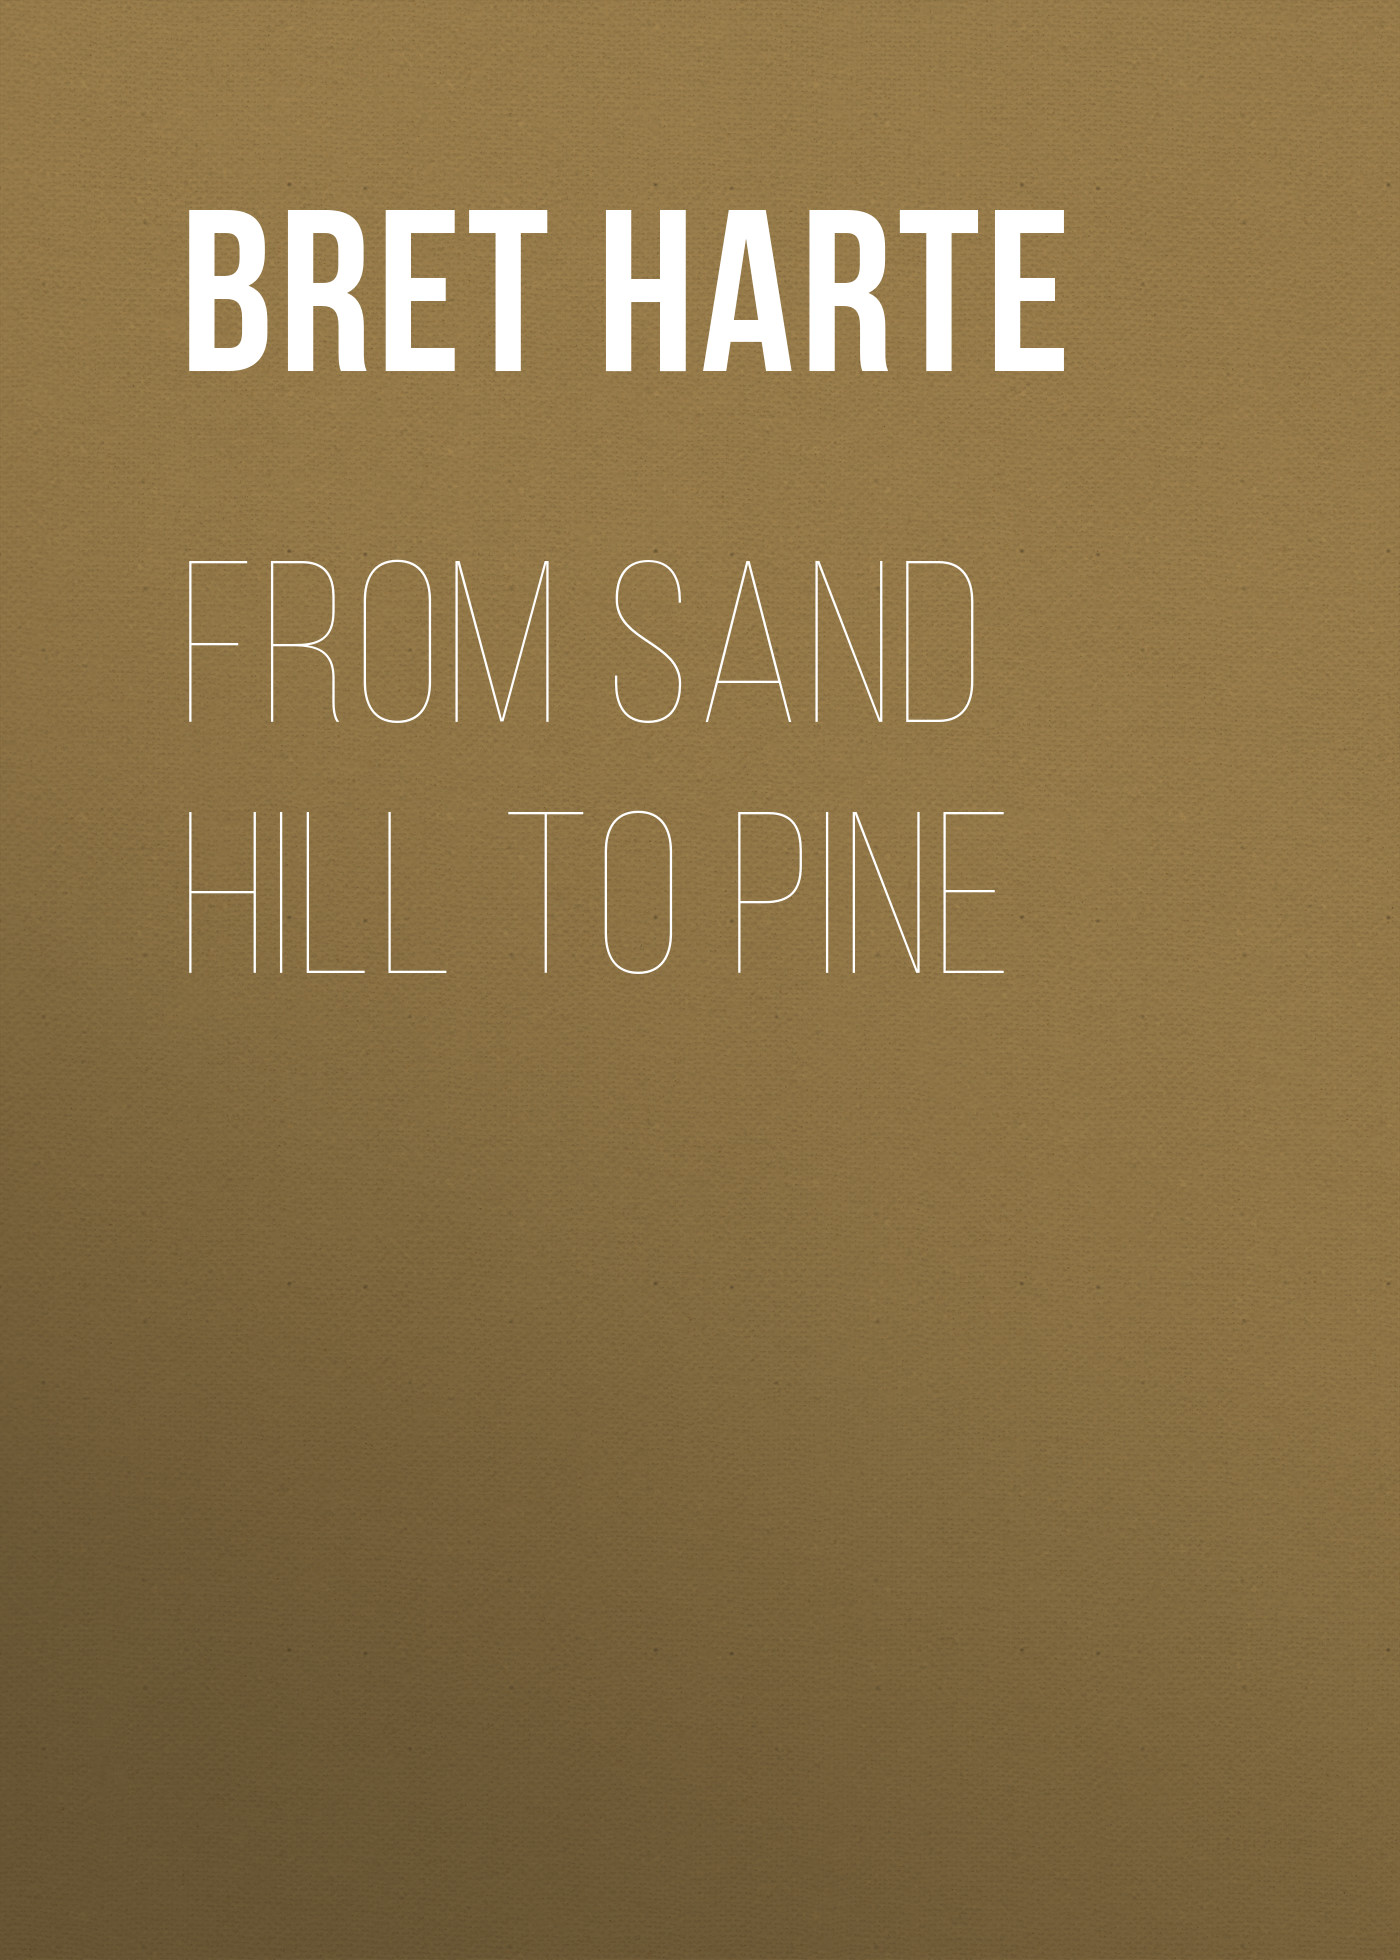 Книга From Sand Hill to Pine из серии , созданная Bret Harte, может относится к жанру Зарубежная фантастика, Литература 19 века, Зарубежная старинная литература, Зарубежная классика. Стоимость электронной книги From Sand Hill to Pine с идентификатором 36322212 составляет 0 руб.